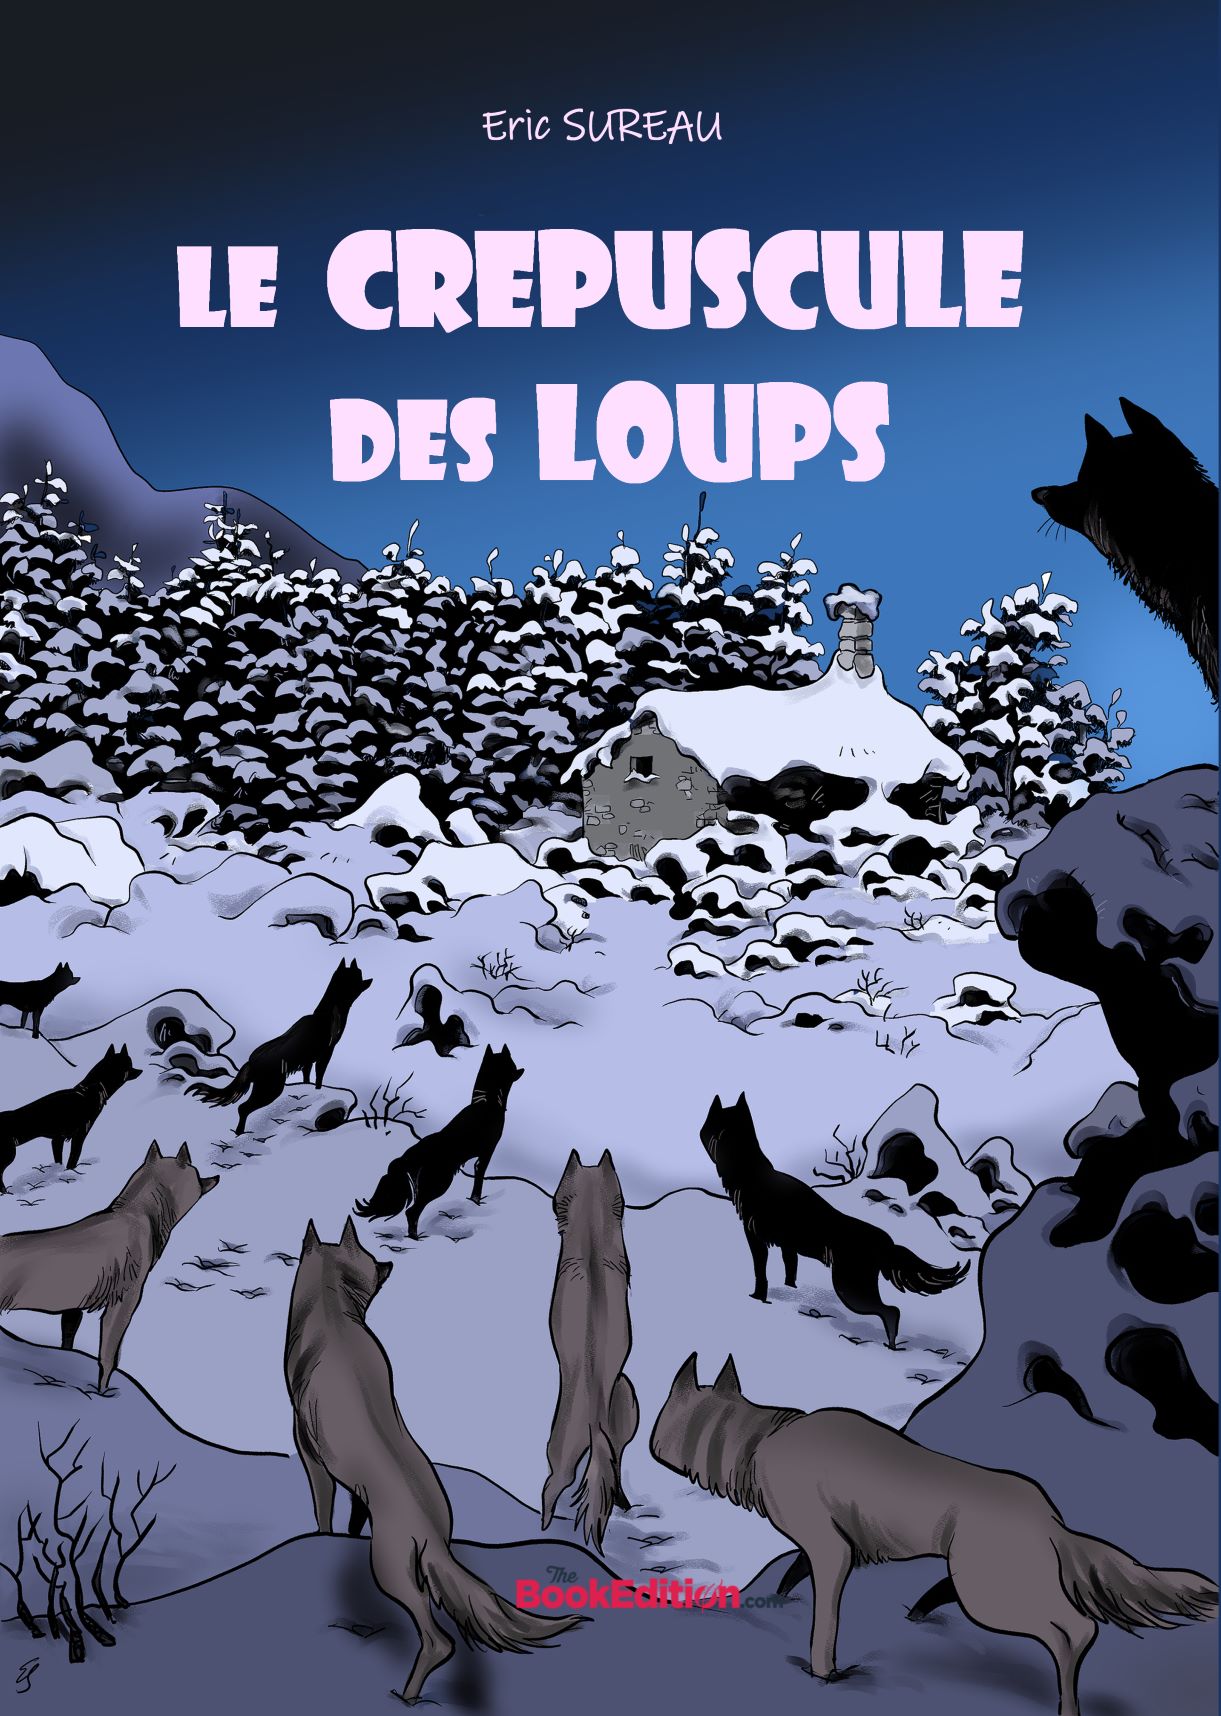 Couverture Crepuscule_des_loups.jpg